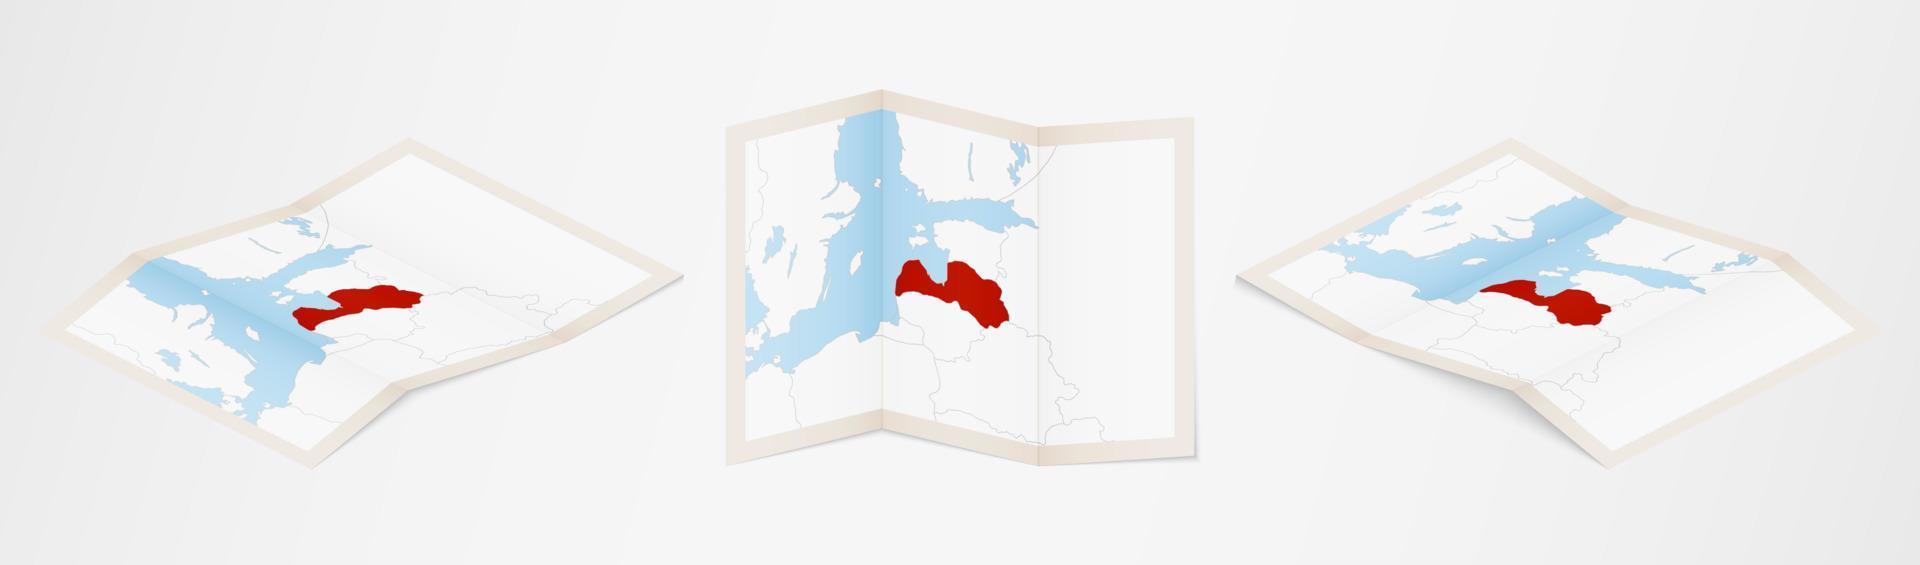 gevouwen kaart van Letland in drie verschillend versies. vector